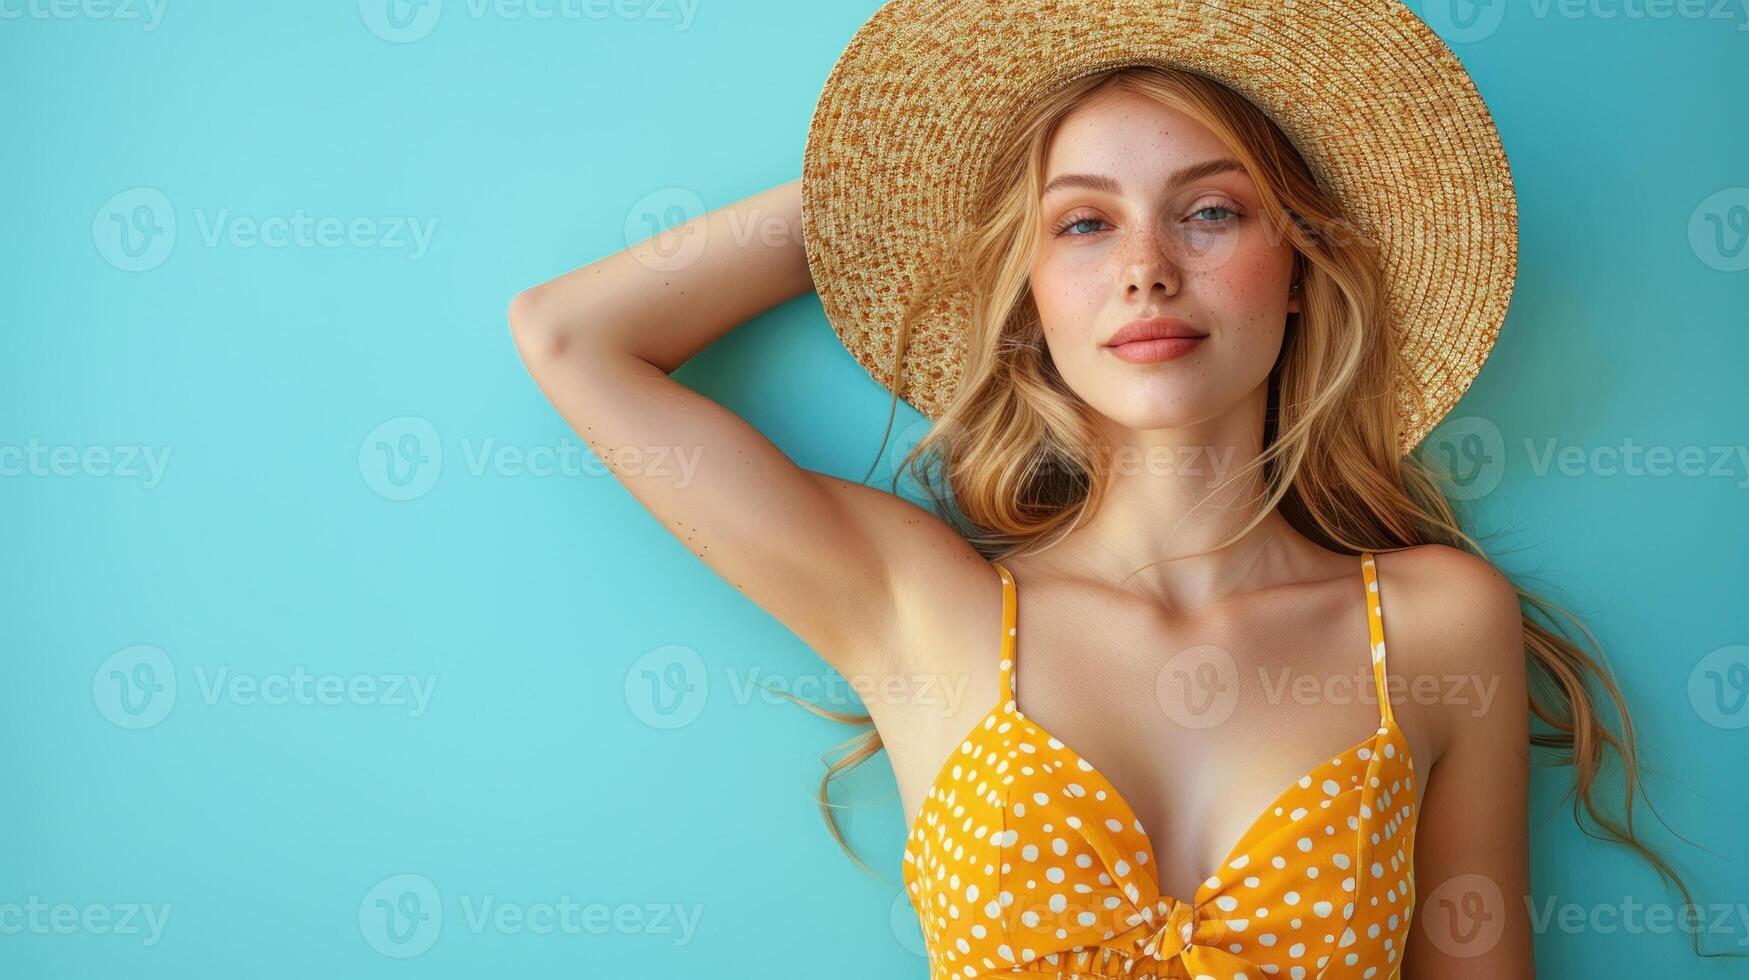 Woman wearing yellow polka dot bikini top photo